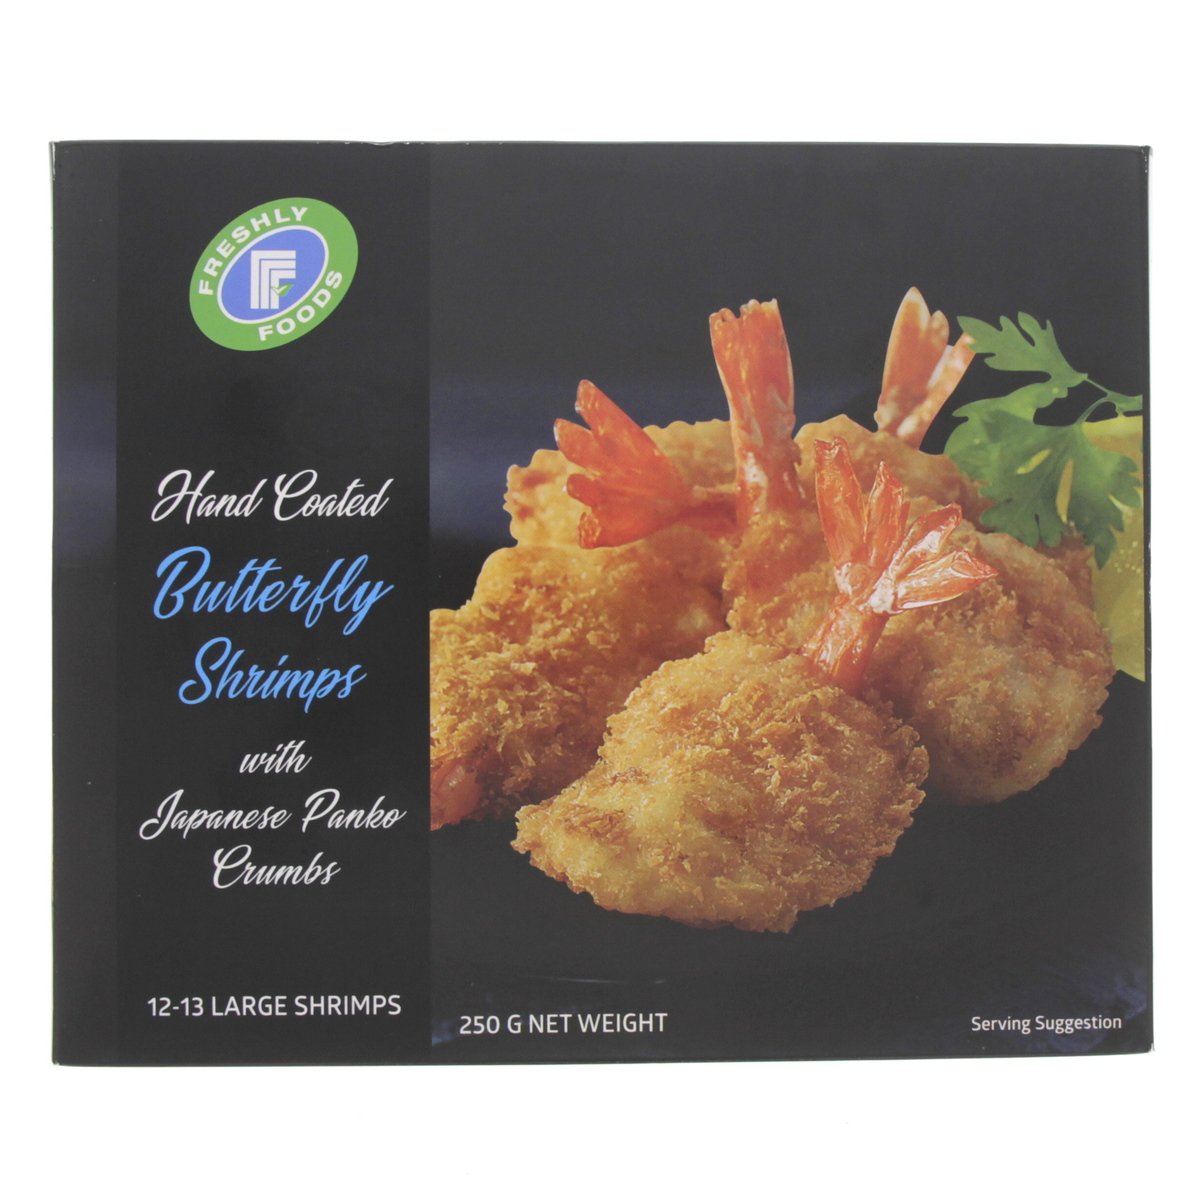 Freshly Foods Breaded Butterfly Shrimps 250 g